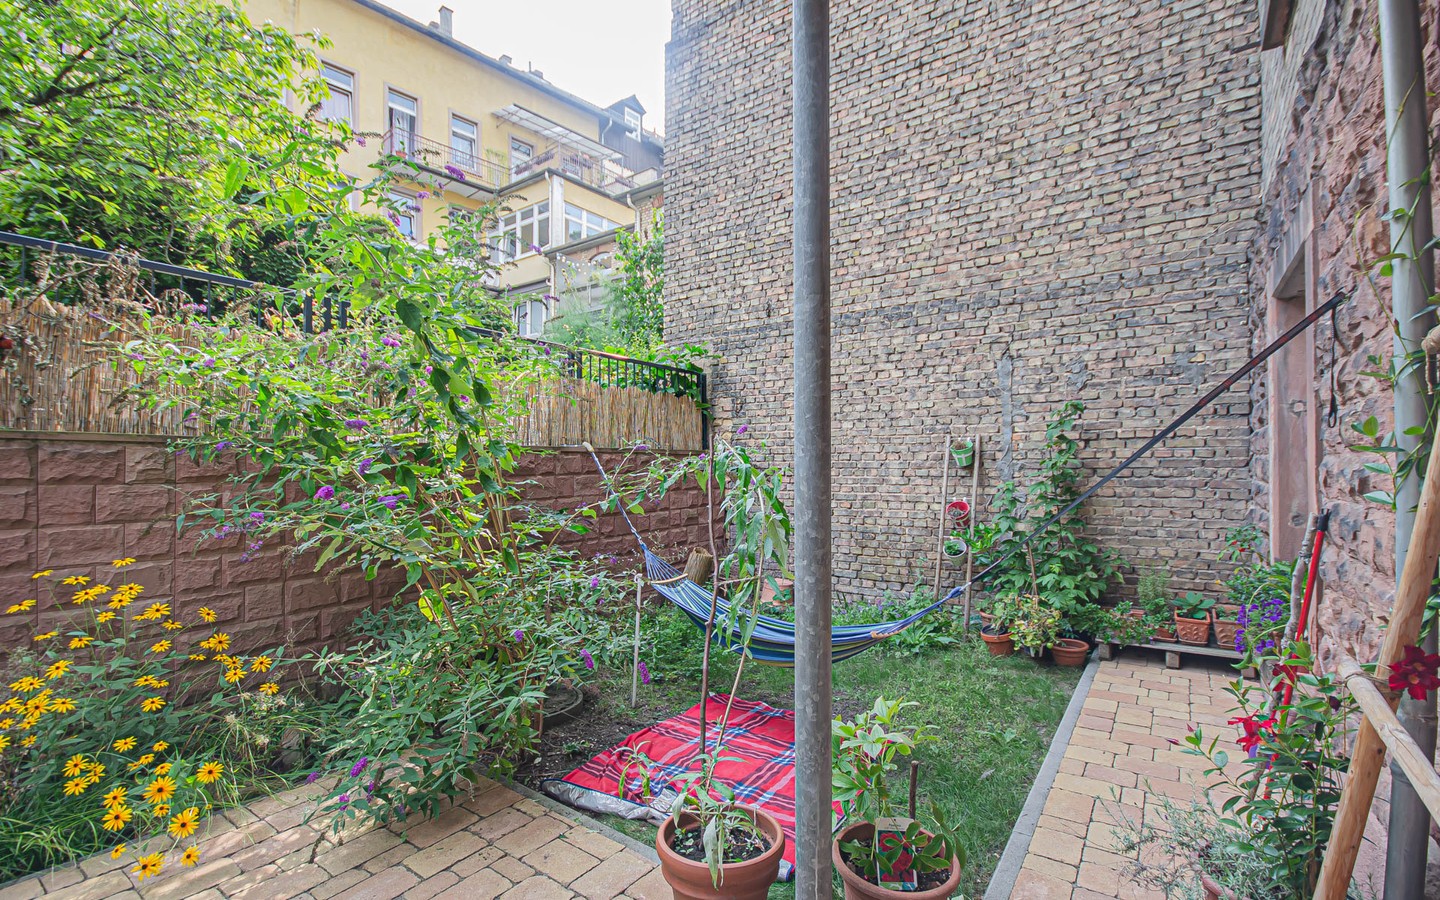 Terrasse - Mittendrin und dennoch ruhig:
Sanierte Altbauwohnung mit Gartenanteil für Singles mit grünem Daumen